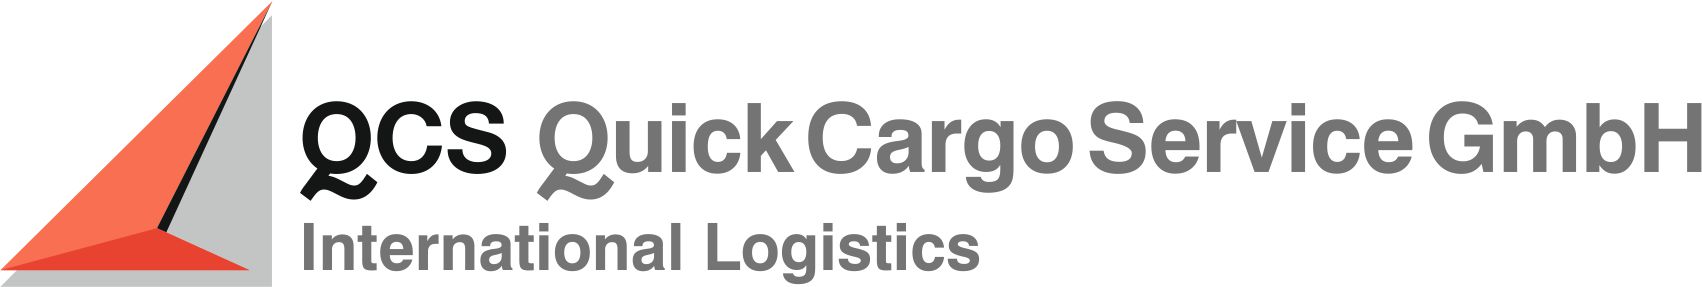 Quick Cargo